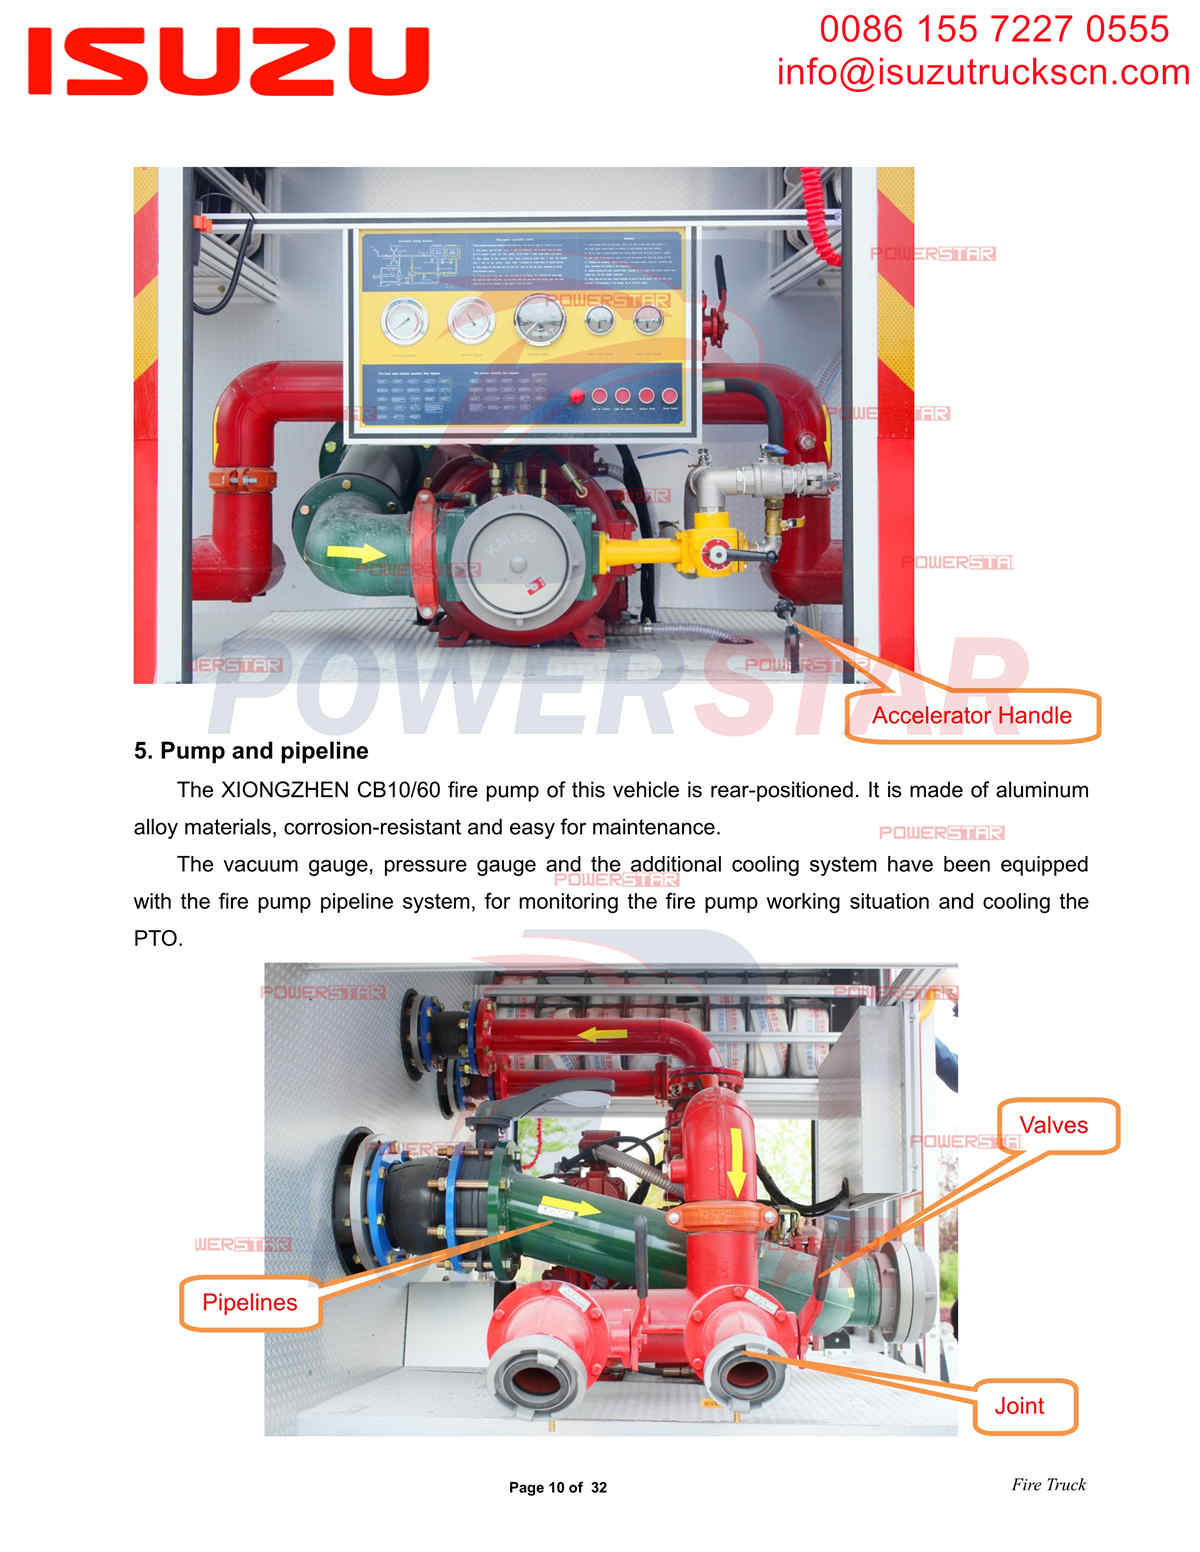 POWERSTAR ISUZU FVZ Fire Truck export Africa